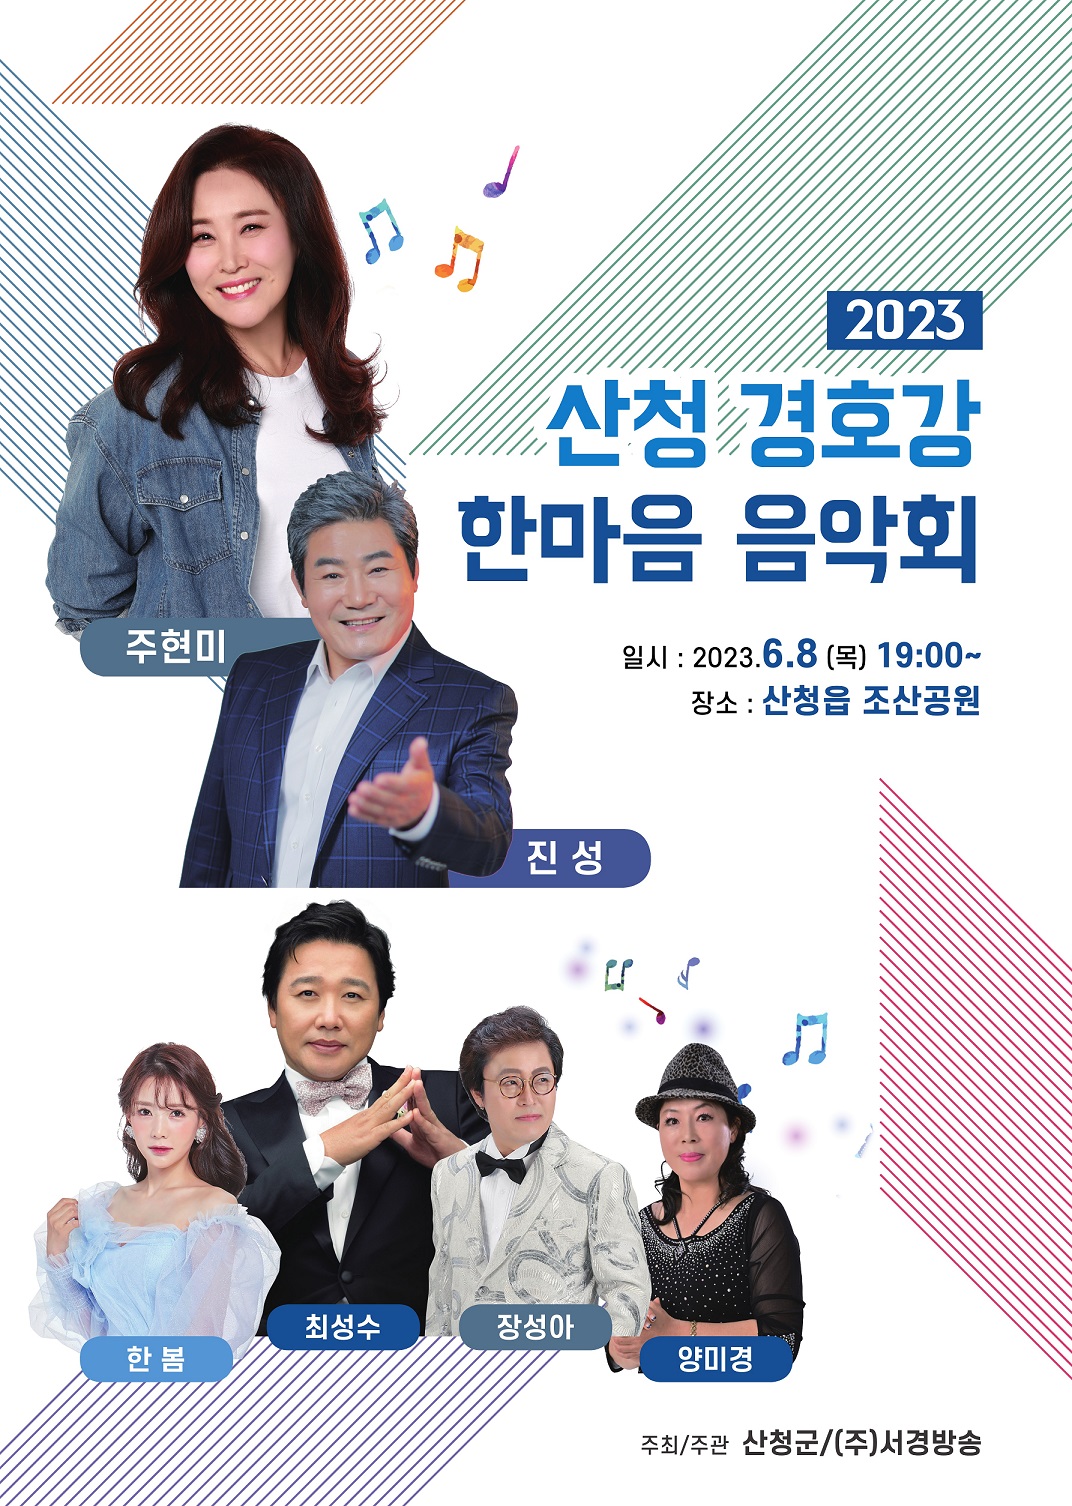 2023 산청 경호강 한마음 음악회 개최 안내 1